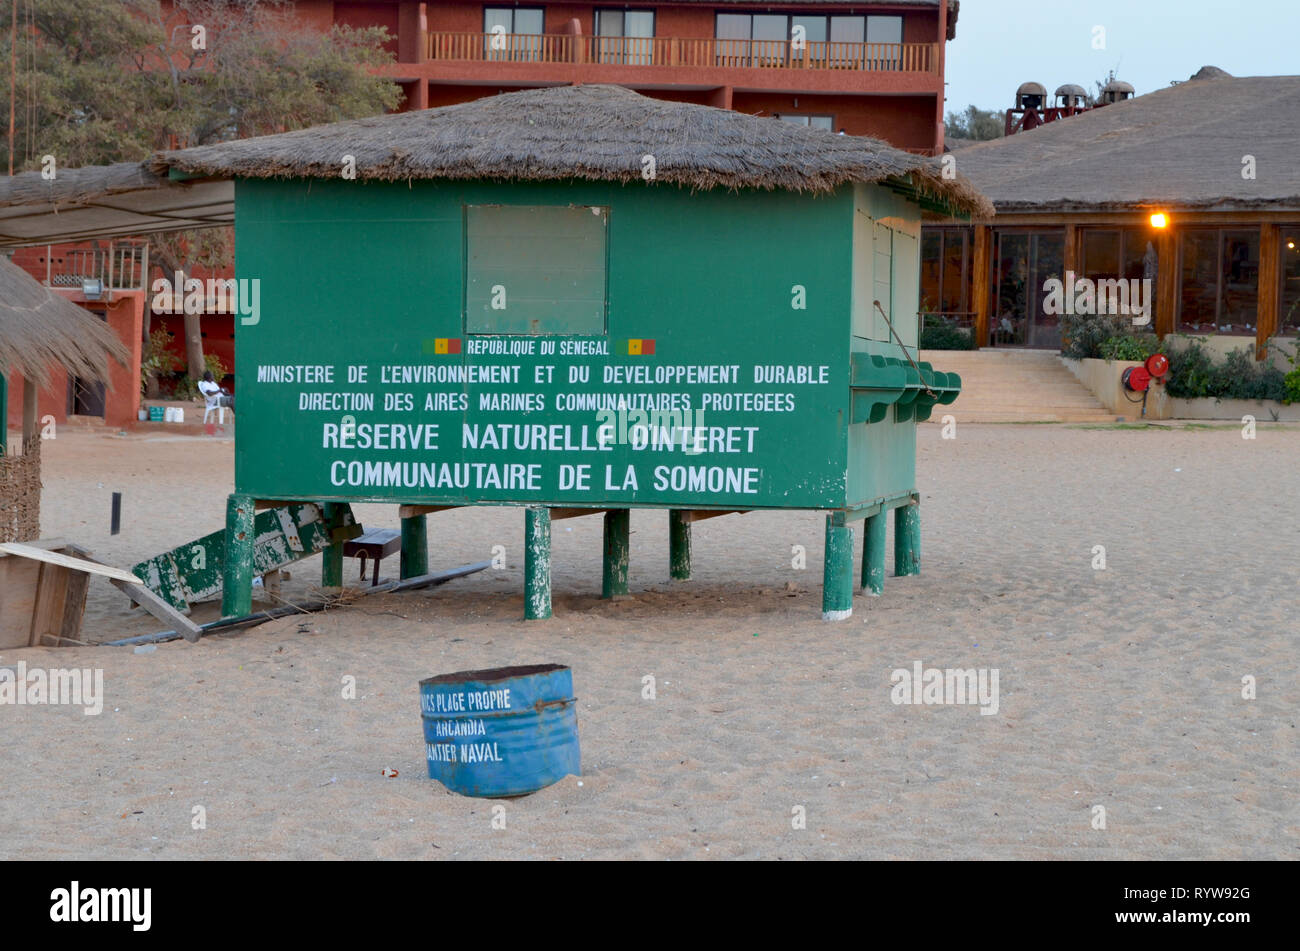 Réserve naturelle communautaire de la Somone, Sénégal - un exemple d'une réserve naturelle gérée par la communauté Banque D'Images